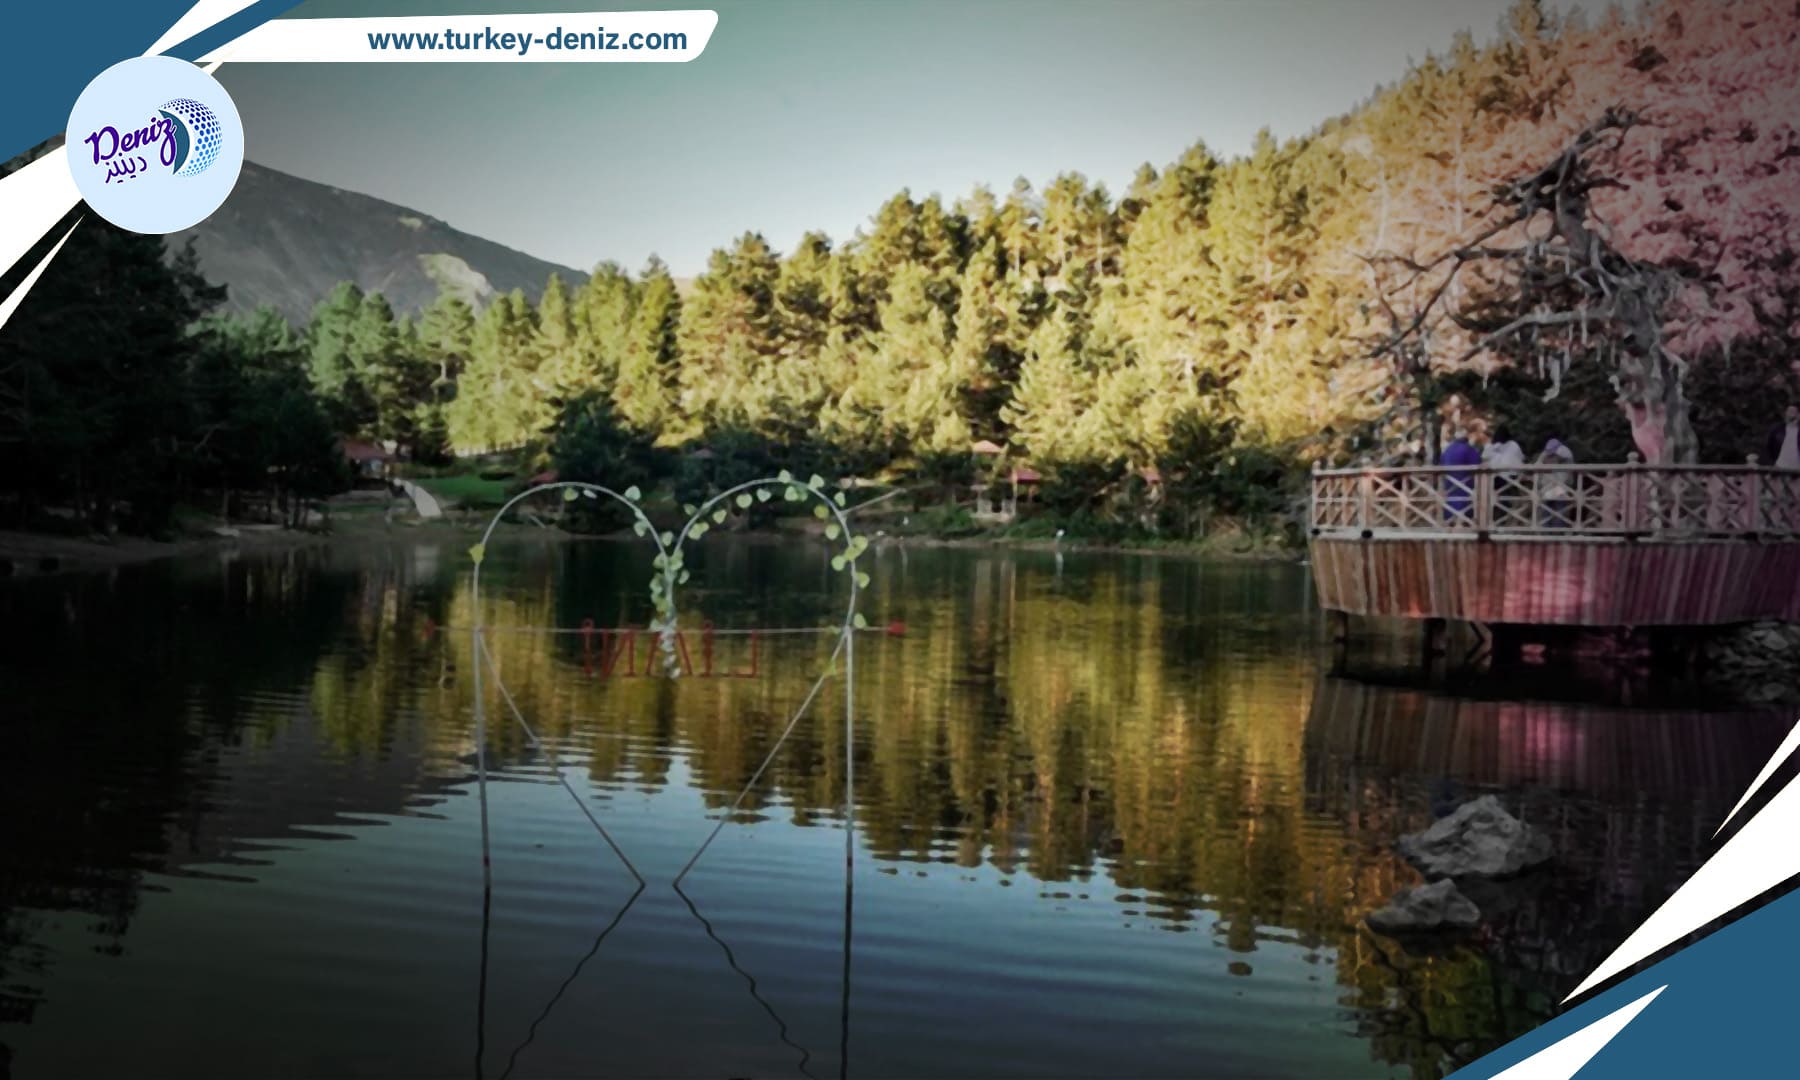 جمال الشتاء في تركيا: بحيرة "ليمني" تتحول إلى لوحة فنية في ولاية غوموش خانه